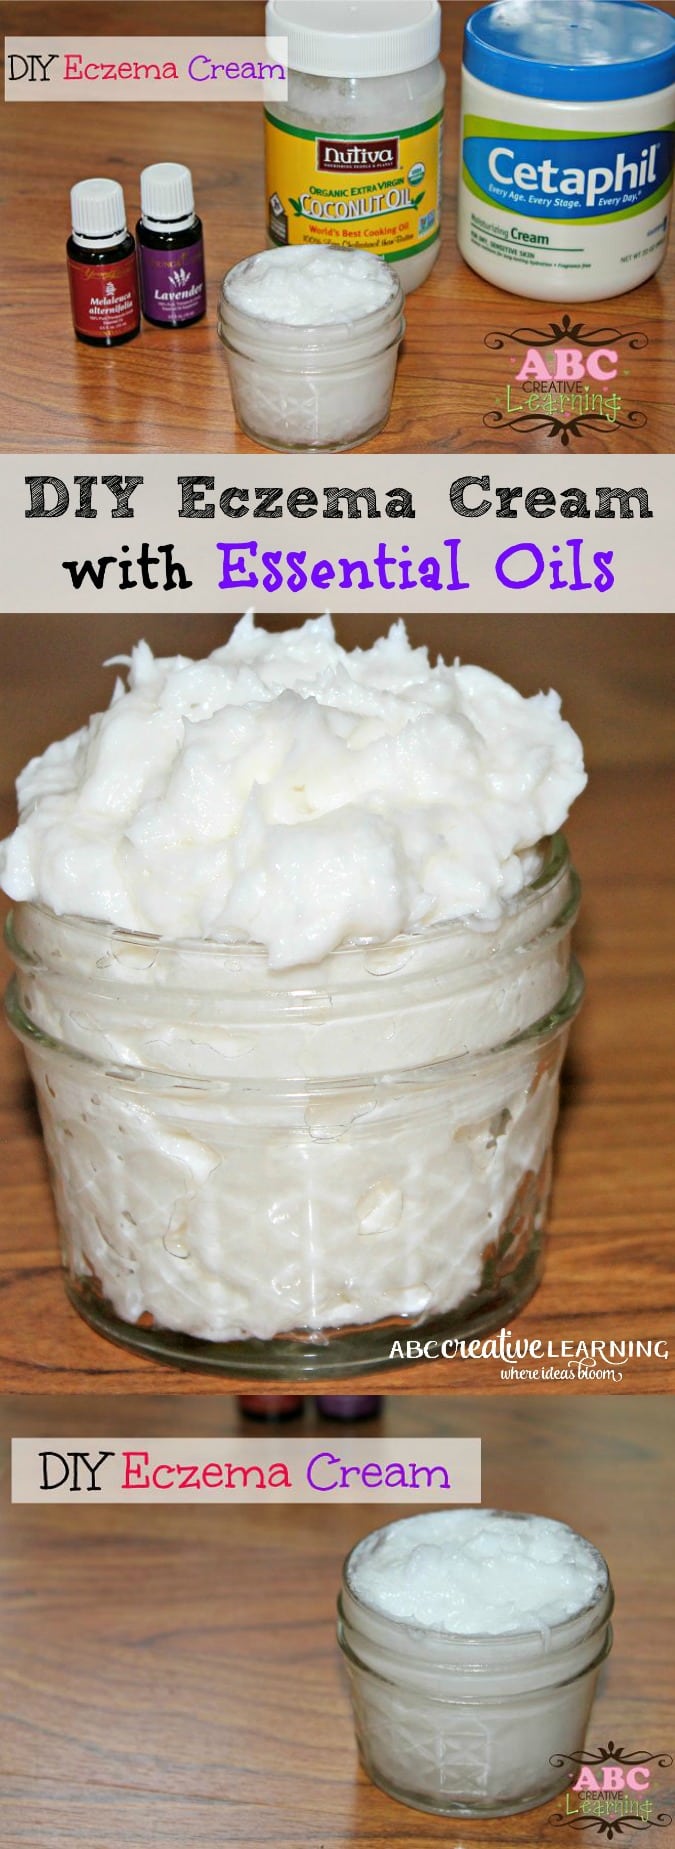 DIY Homemade Eczema Cream with Essential Oils - abccreativelearning.com